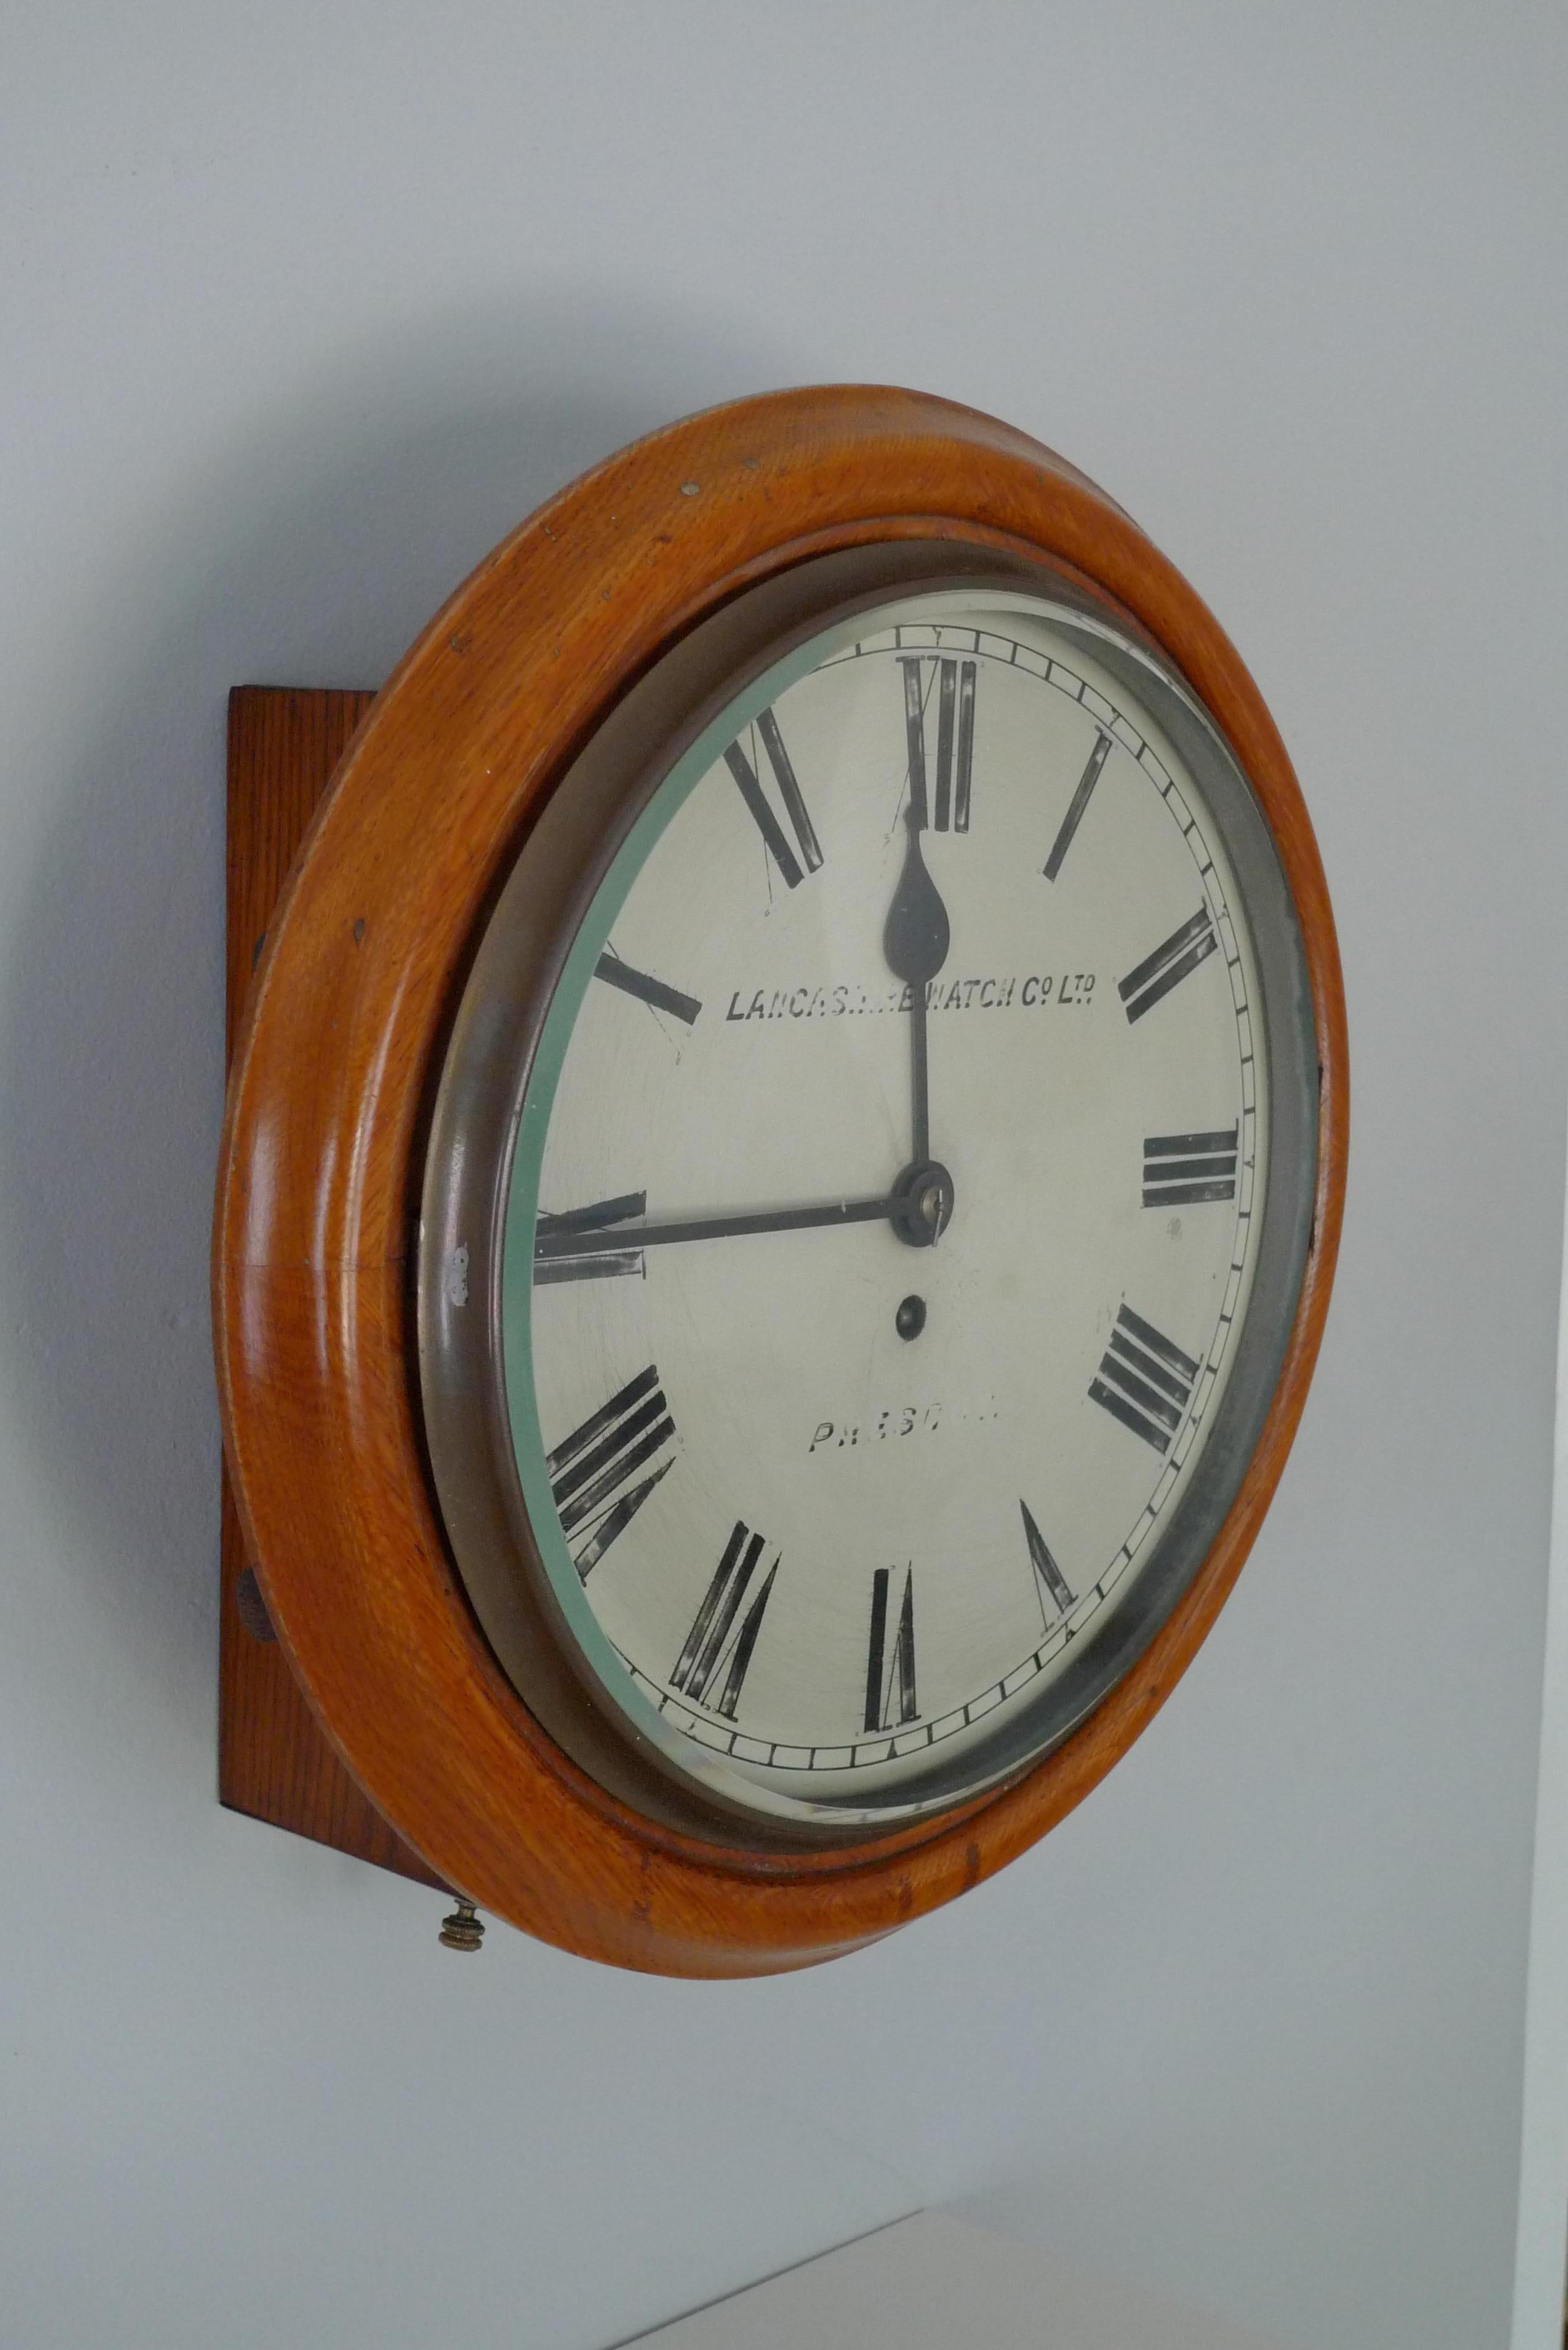 Biseauté Horloge murale de Lancashire Watch Co. provenant d'une gare, fin du 19e siècle. Livraison gratuite en vente